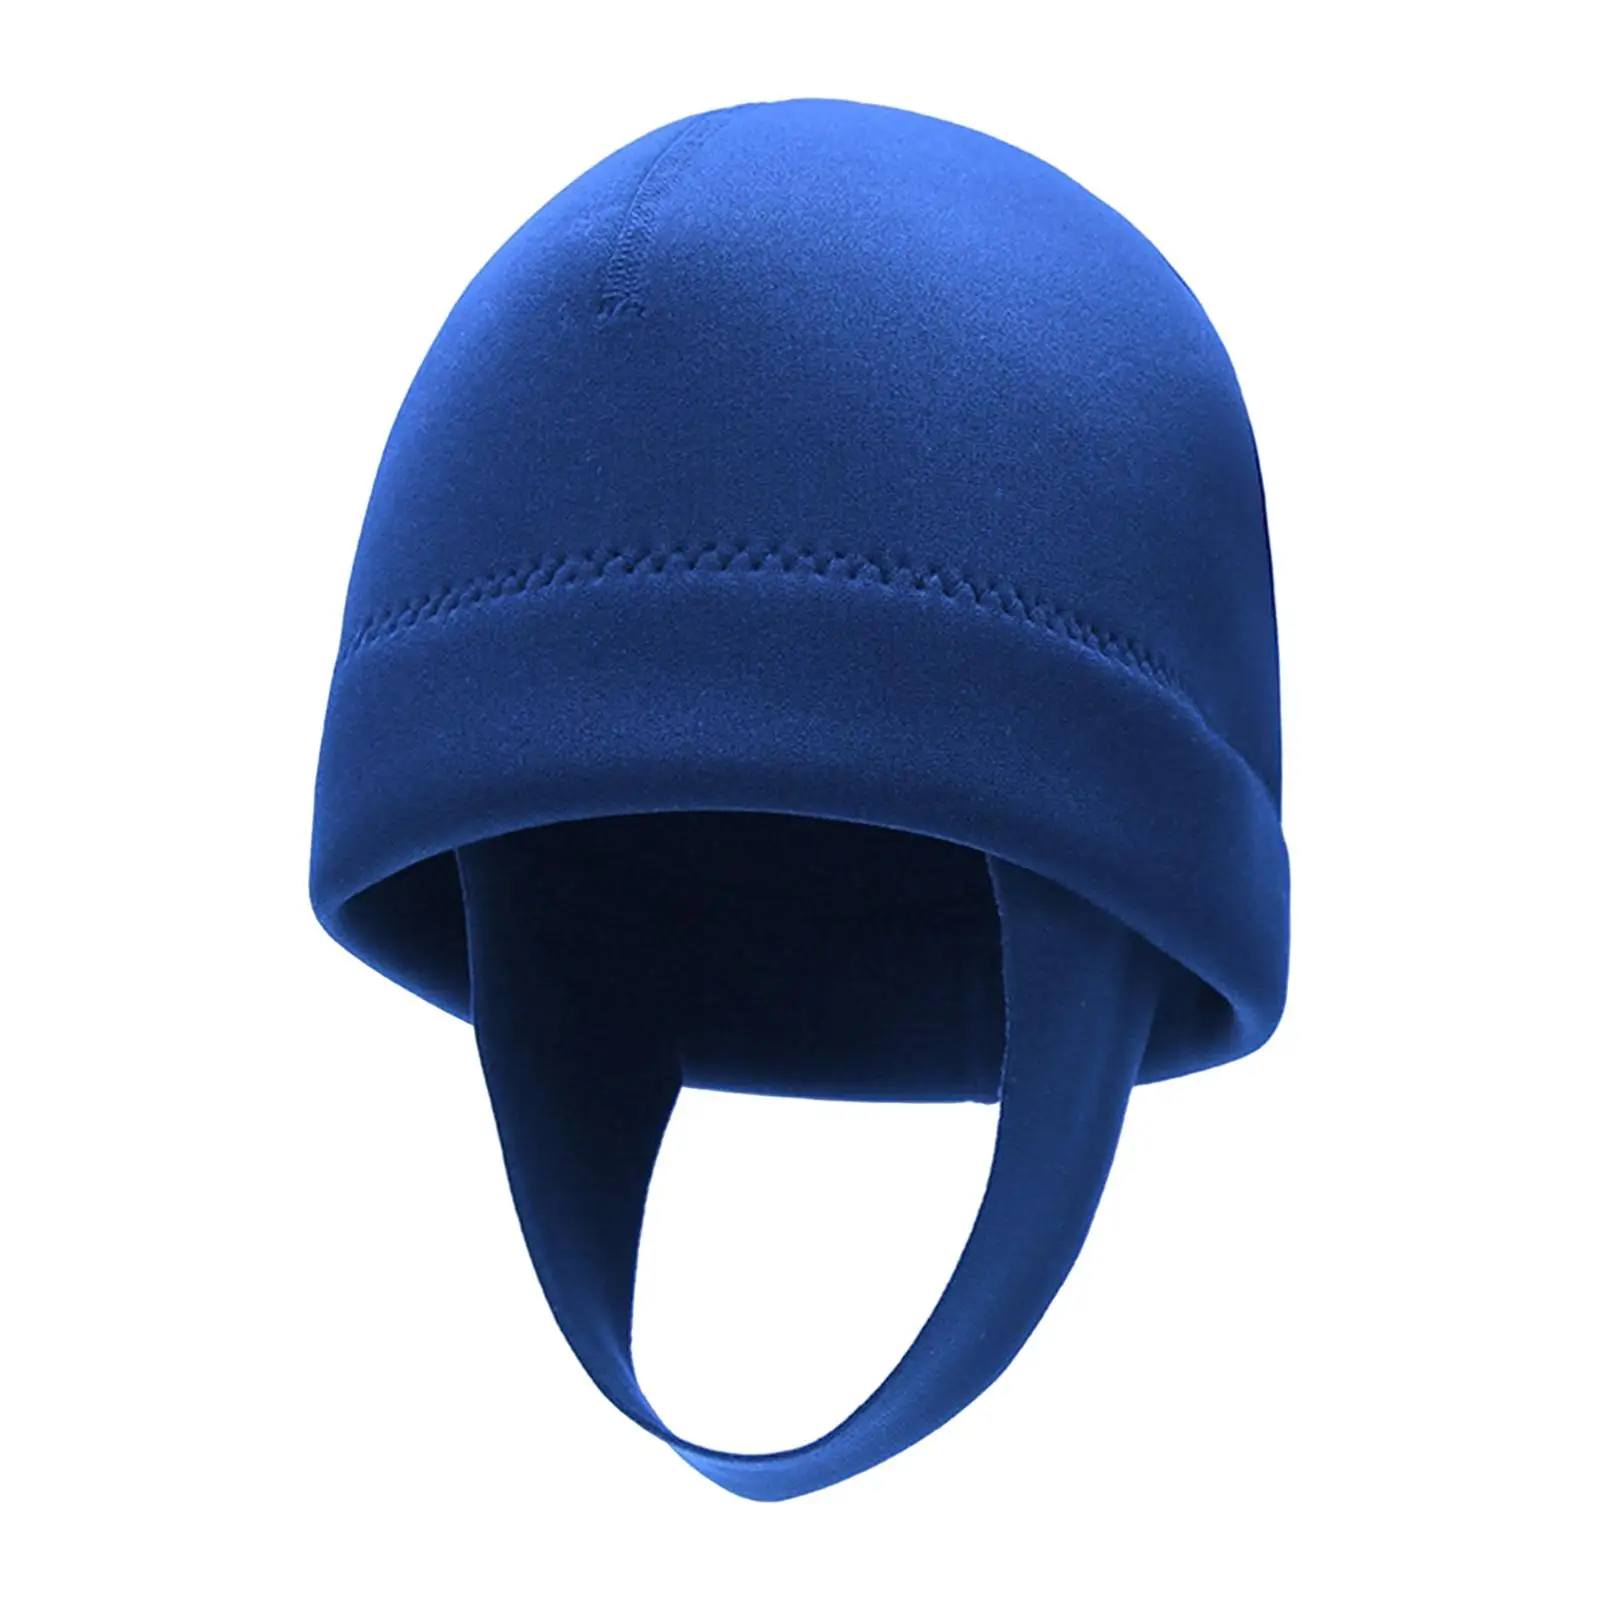 2mm Neoprene Wetsuit Hood Ear Protector Head Protection Wetsuit Diving Hood Cap Thermal Hood for Men Women Snorkeling Kayaking